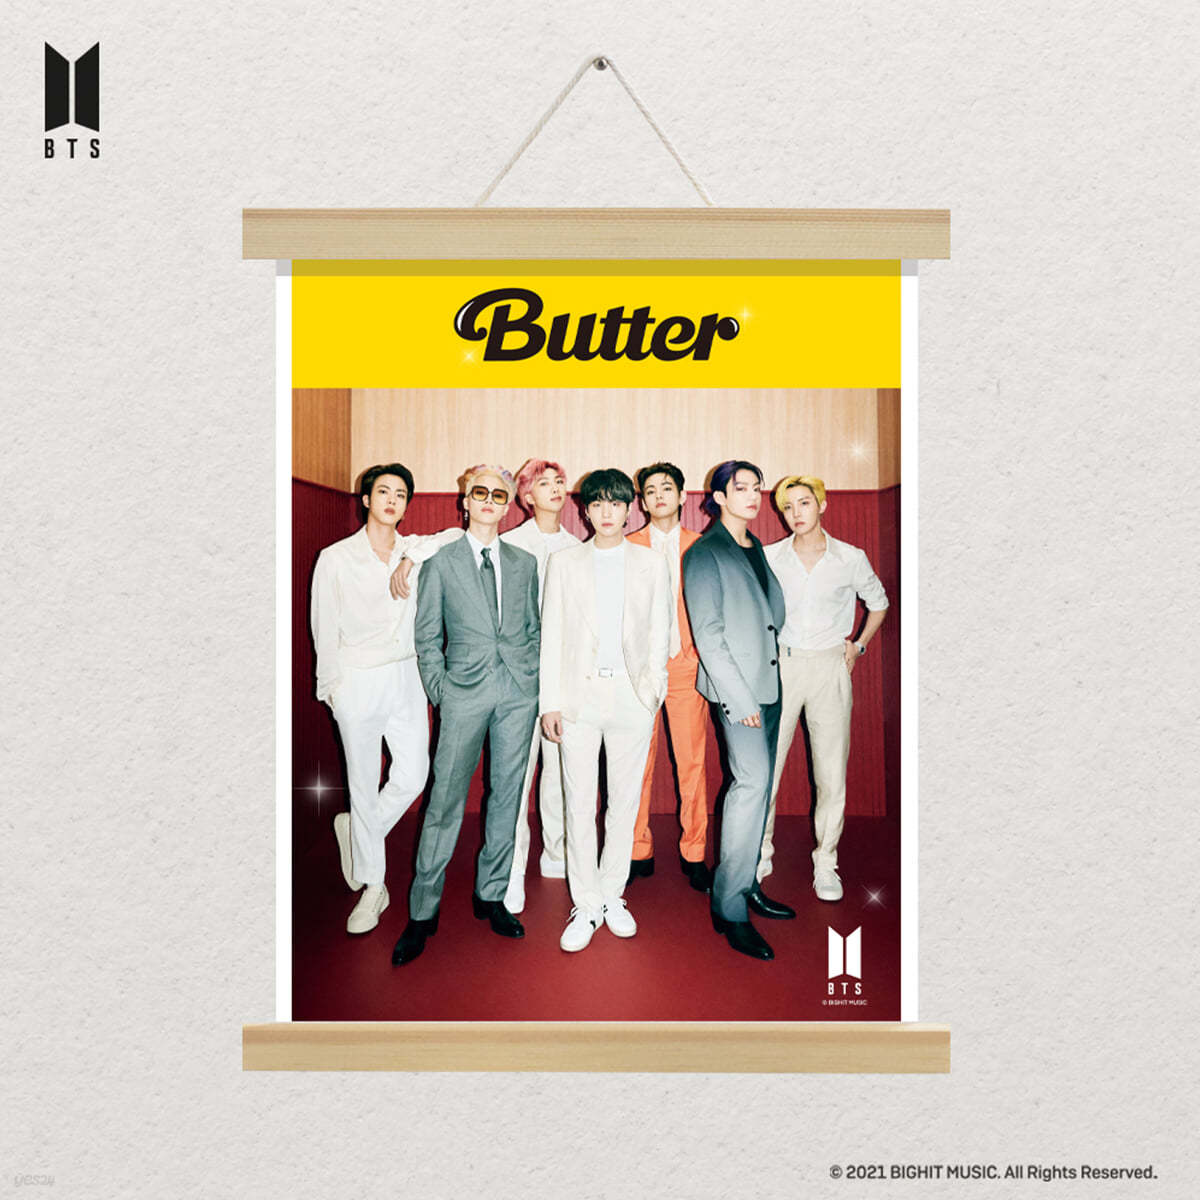 방탄소년단 (BTS) - Butter DIY 큐빅 페인팅 행잉 포스터 [H1]